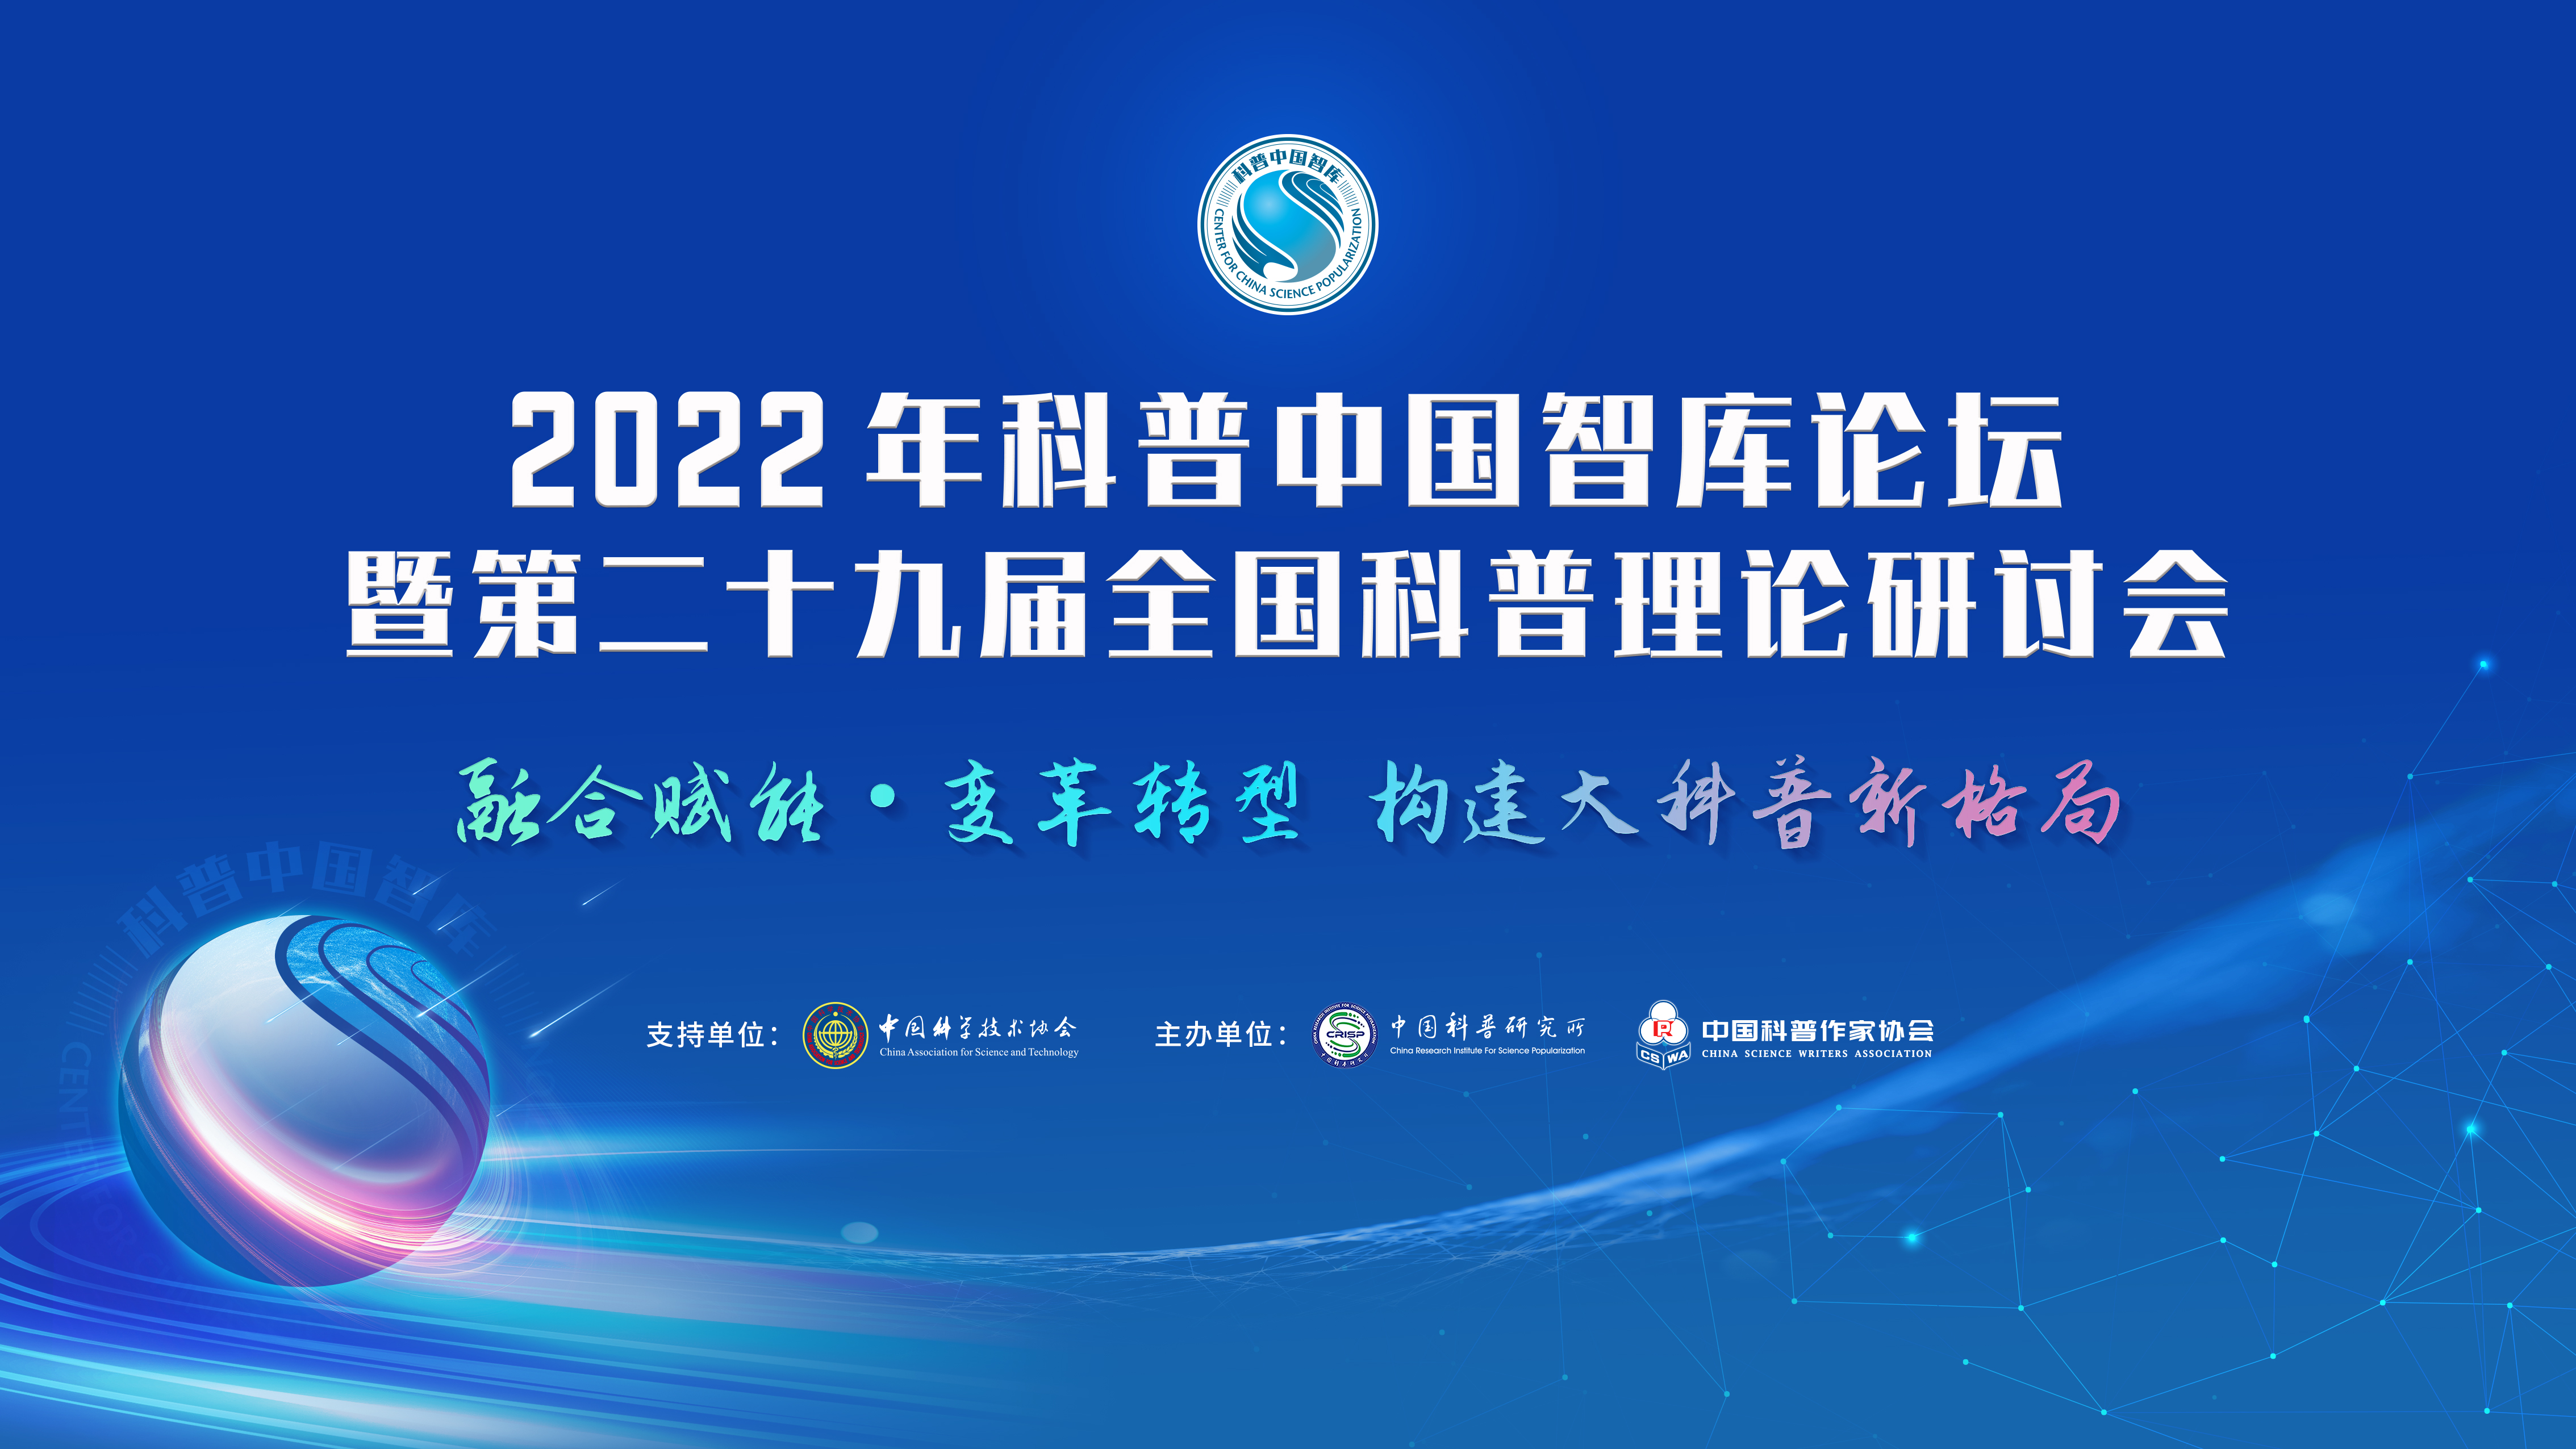 2022年科普中国智库论坛暨第二十九届全国科普理论研讨会